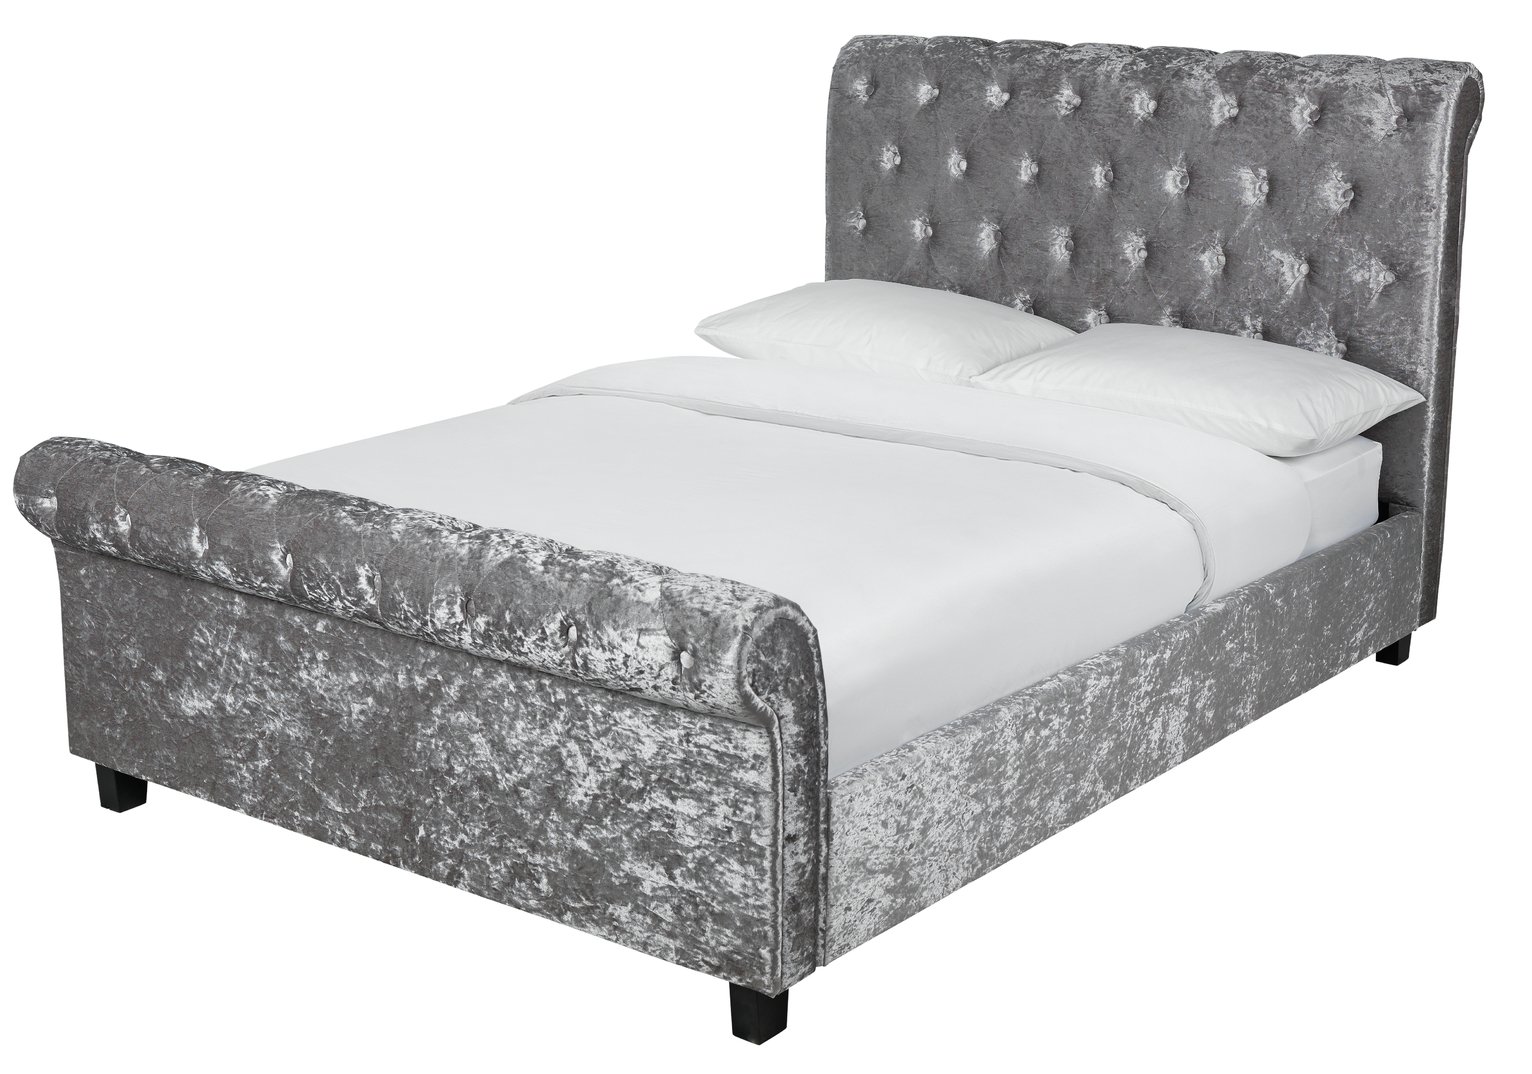 Argos Home Penelope Kingsize Crushed Velvet Bed - Silver